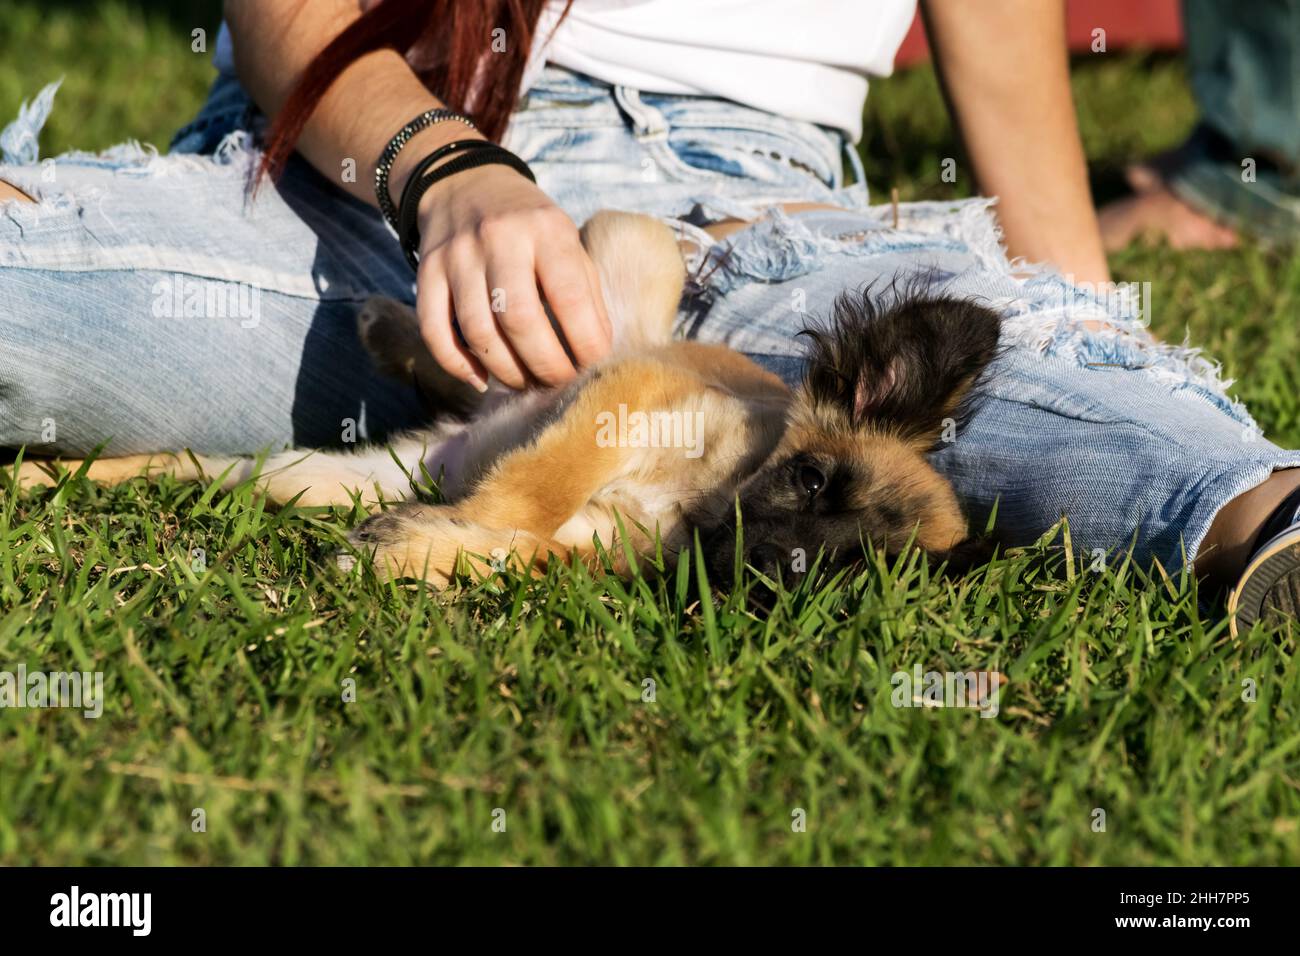 Piccolo cane bruno di semi-razza furry che giace sull'erba tra le gambe aperte di una persona femminile che indossa jeans leggeri, il cane è stato accarezzato sul ventre Foto Stock